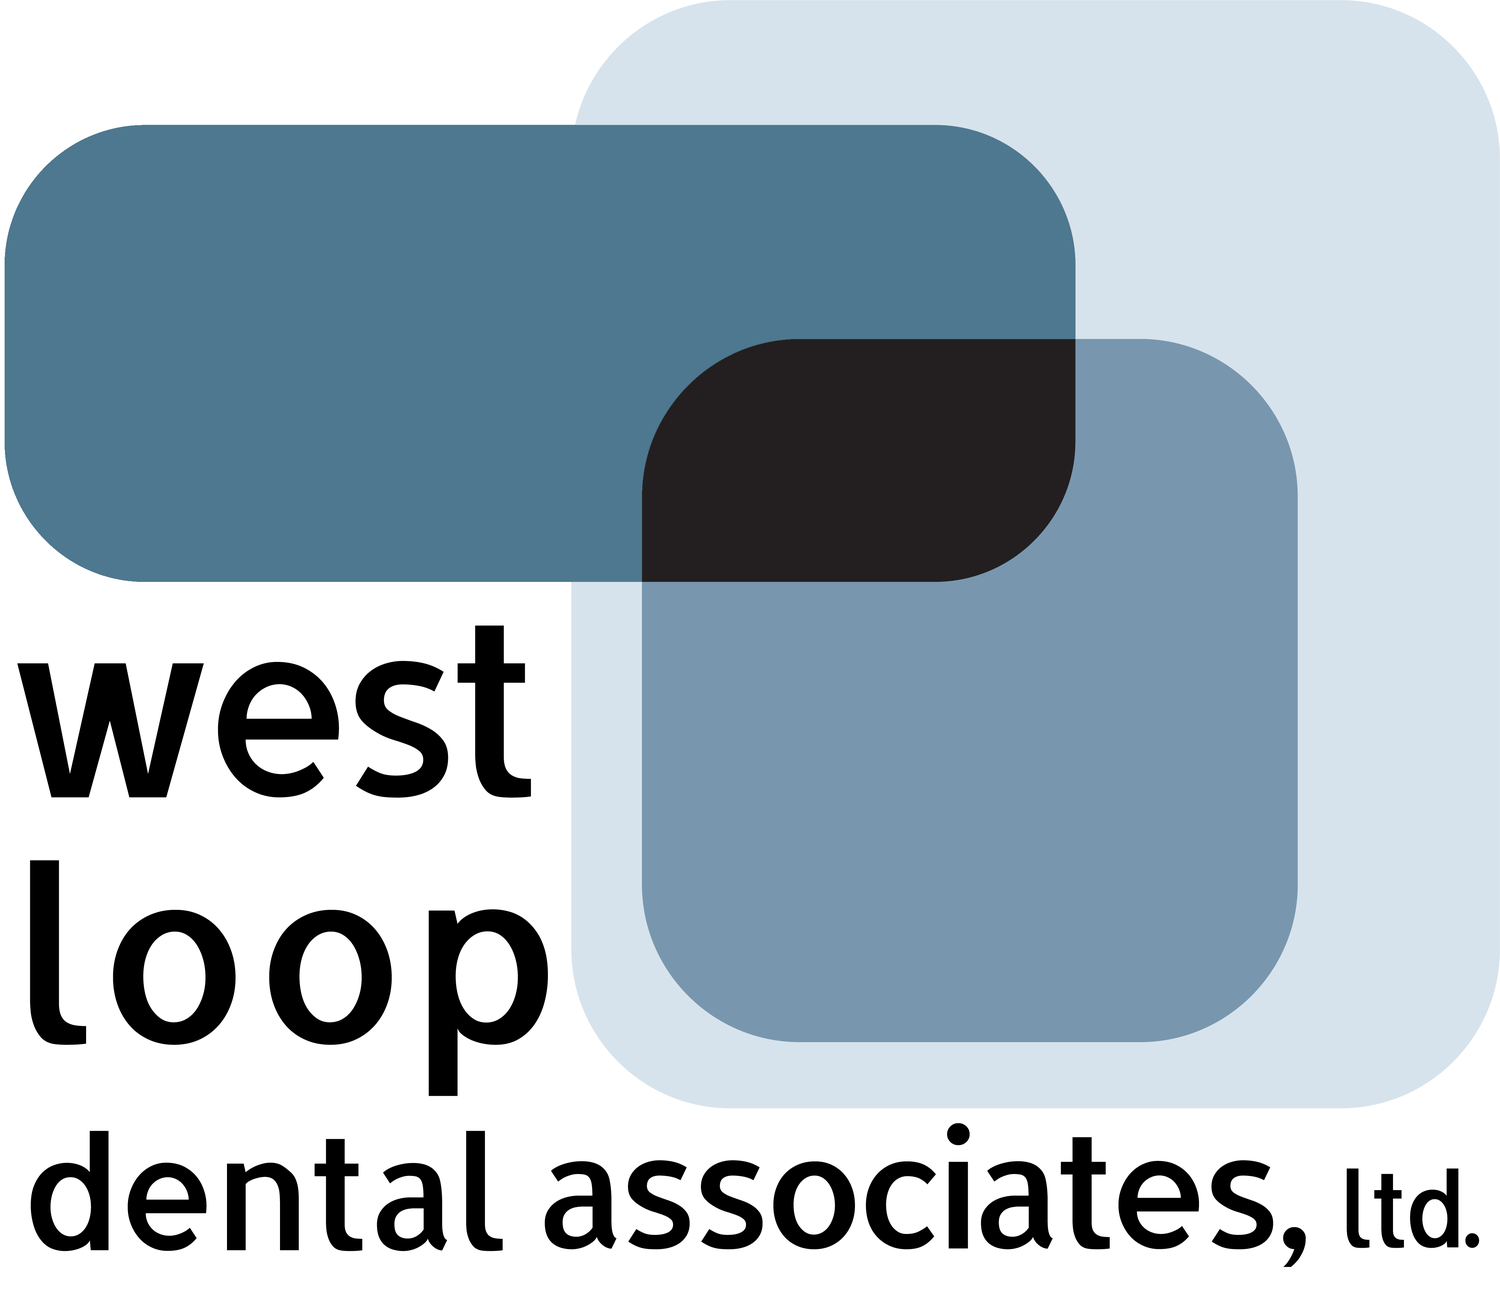 West Loop Dental Associates: Dr. Richard J. Cooper, DDS - Chicago Dentist